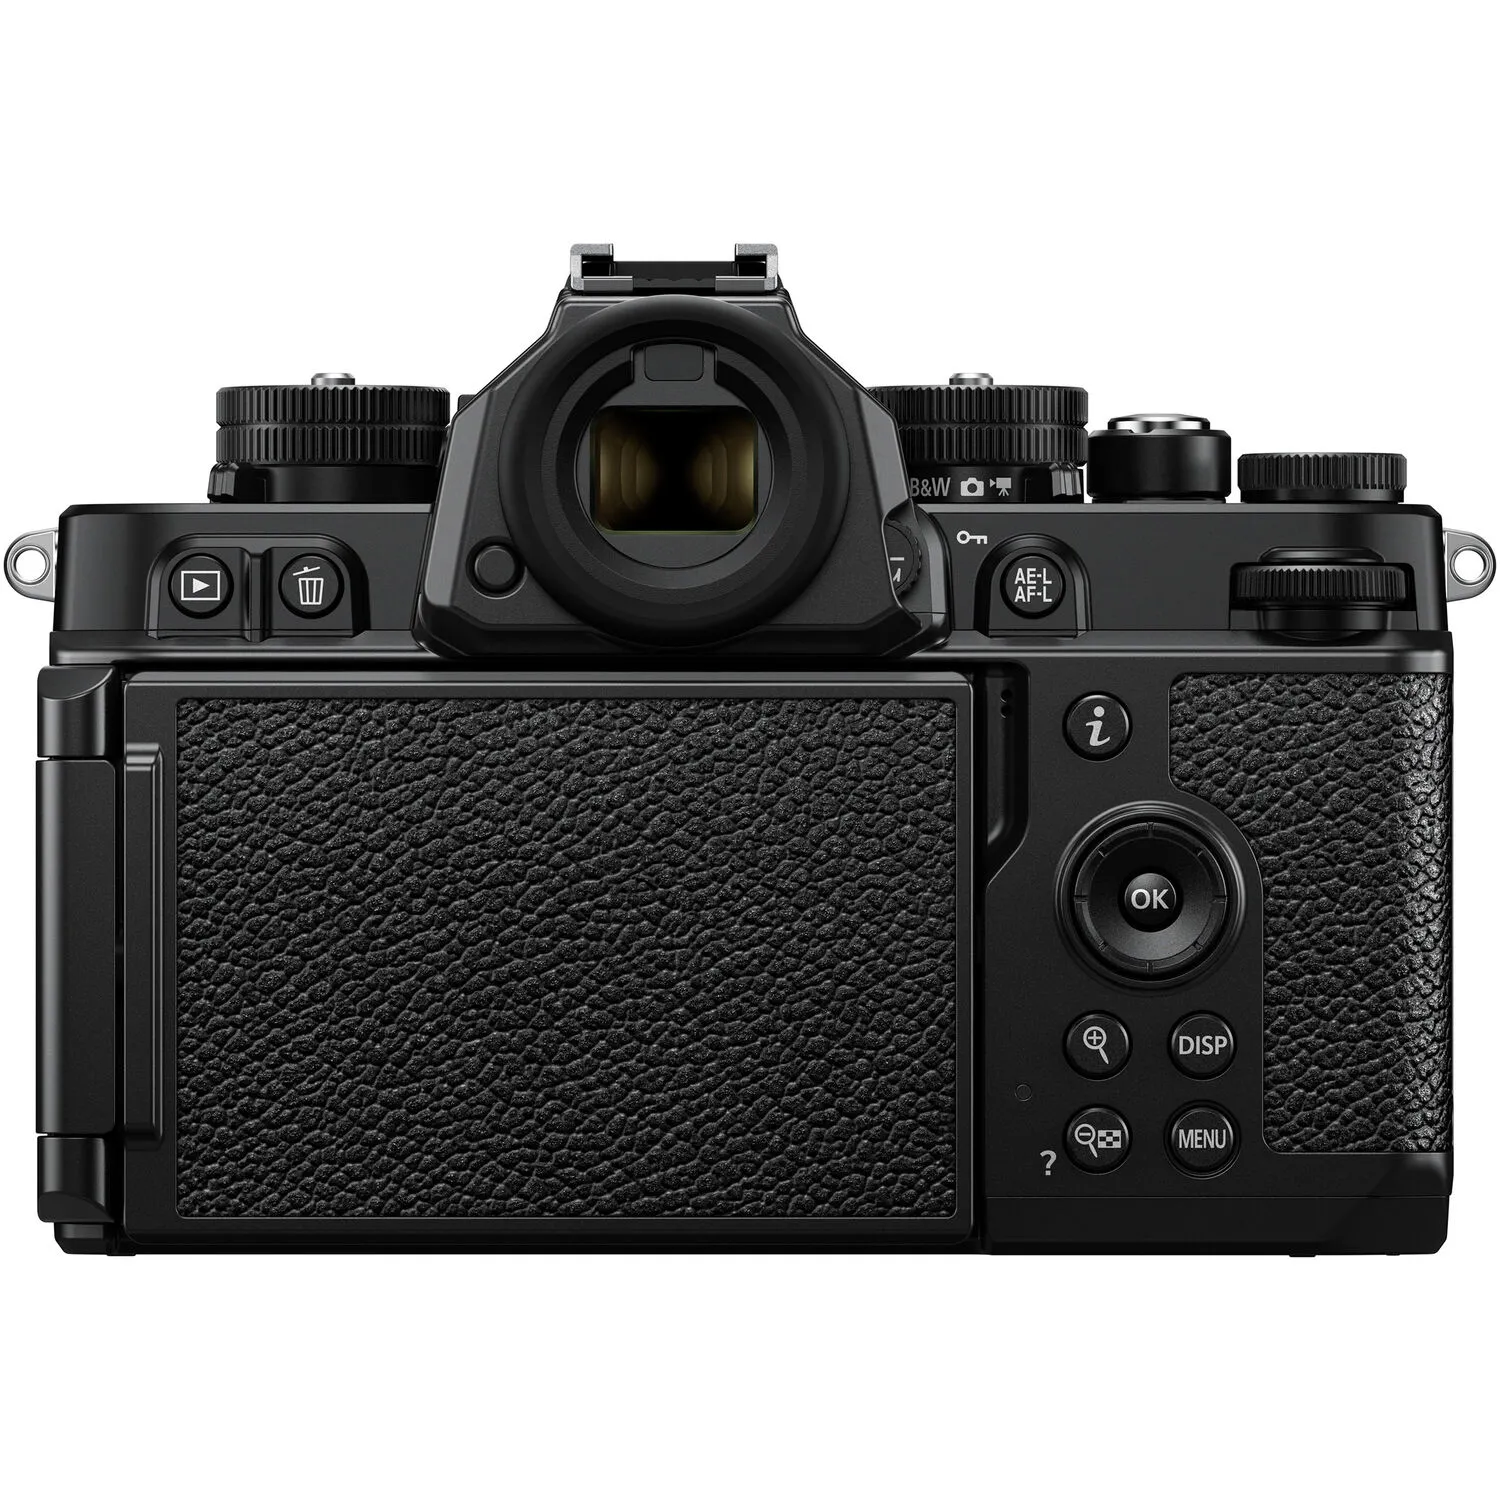 Máy ảnh Nikon Zf với ống kính 40mm F2 SE